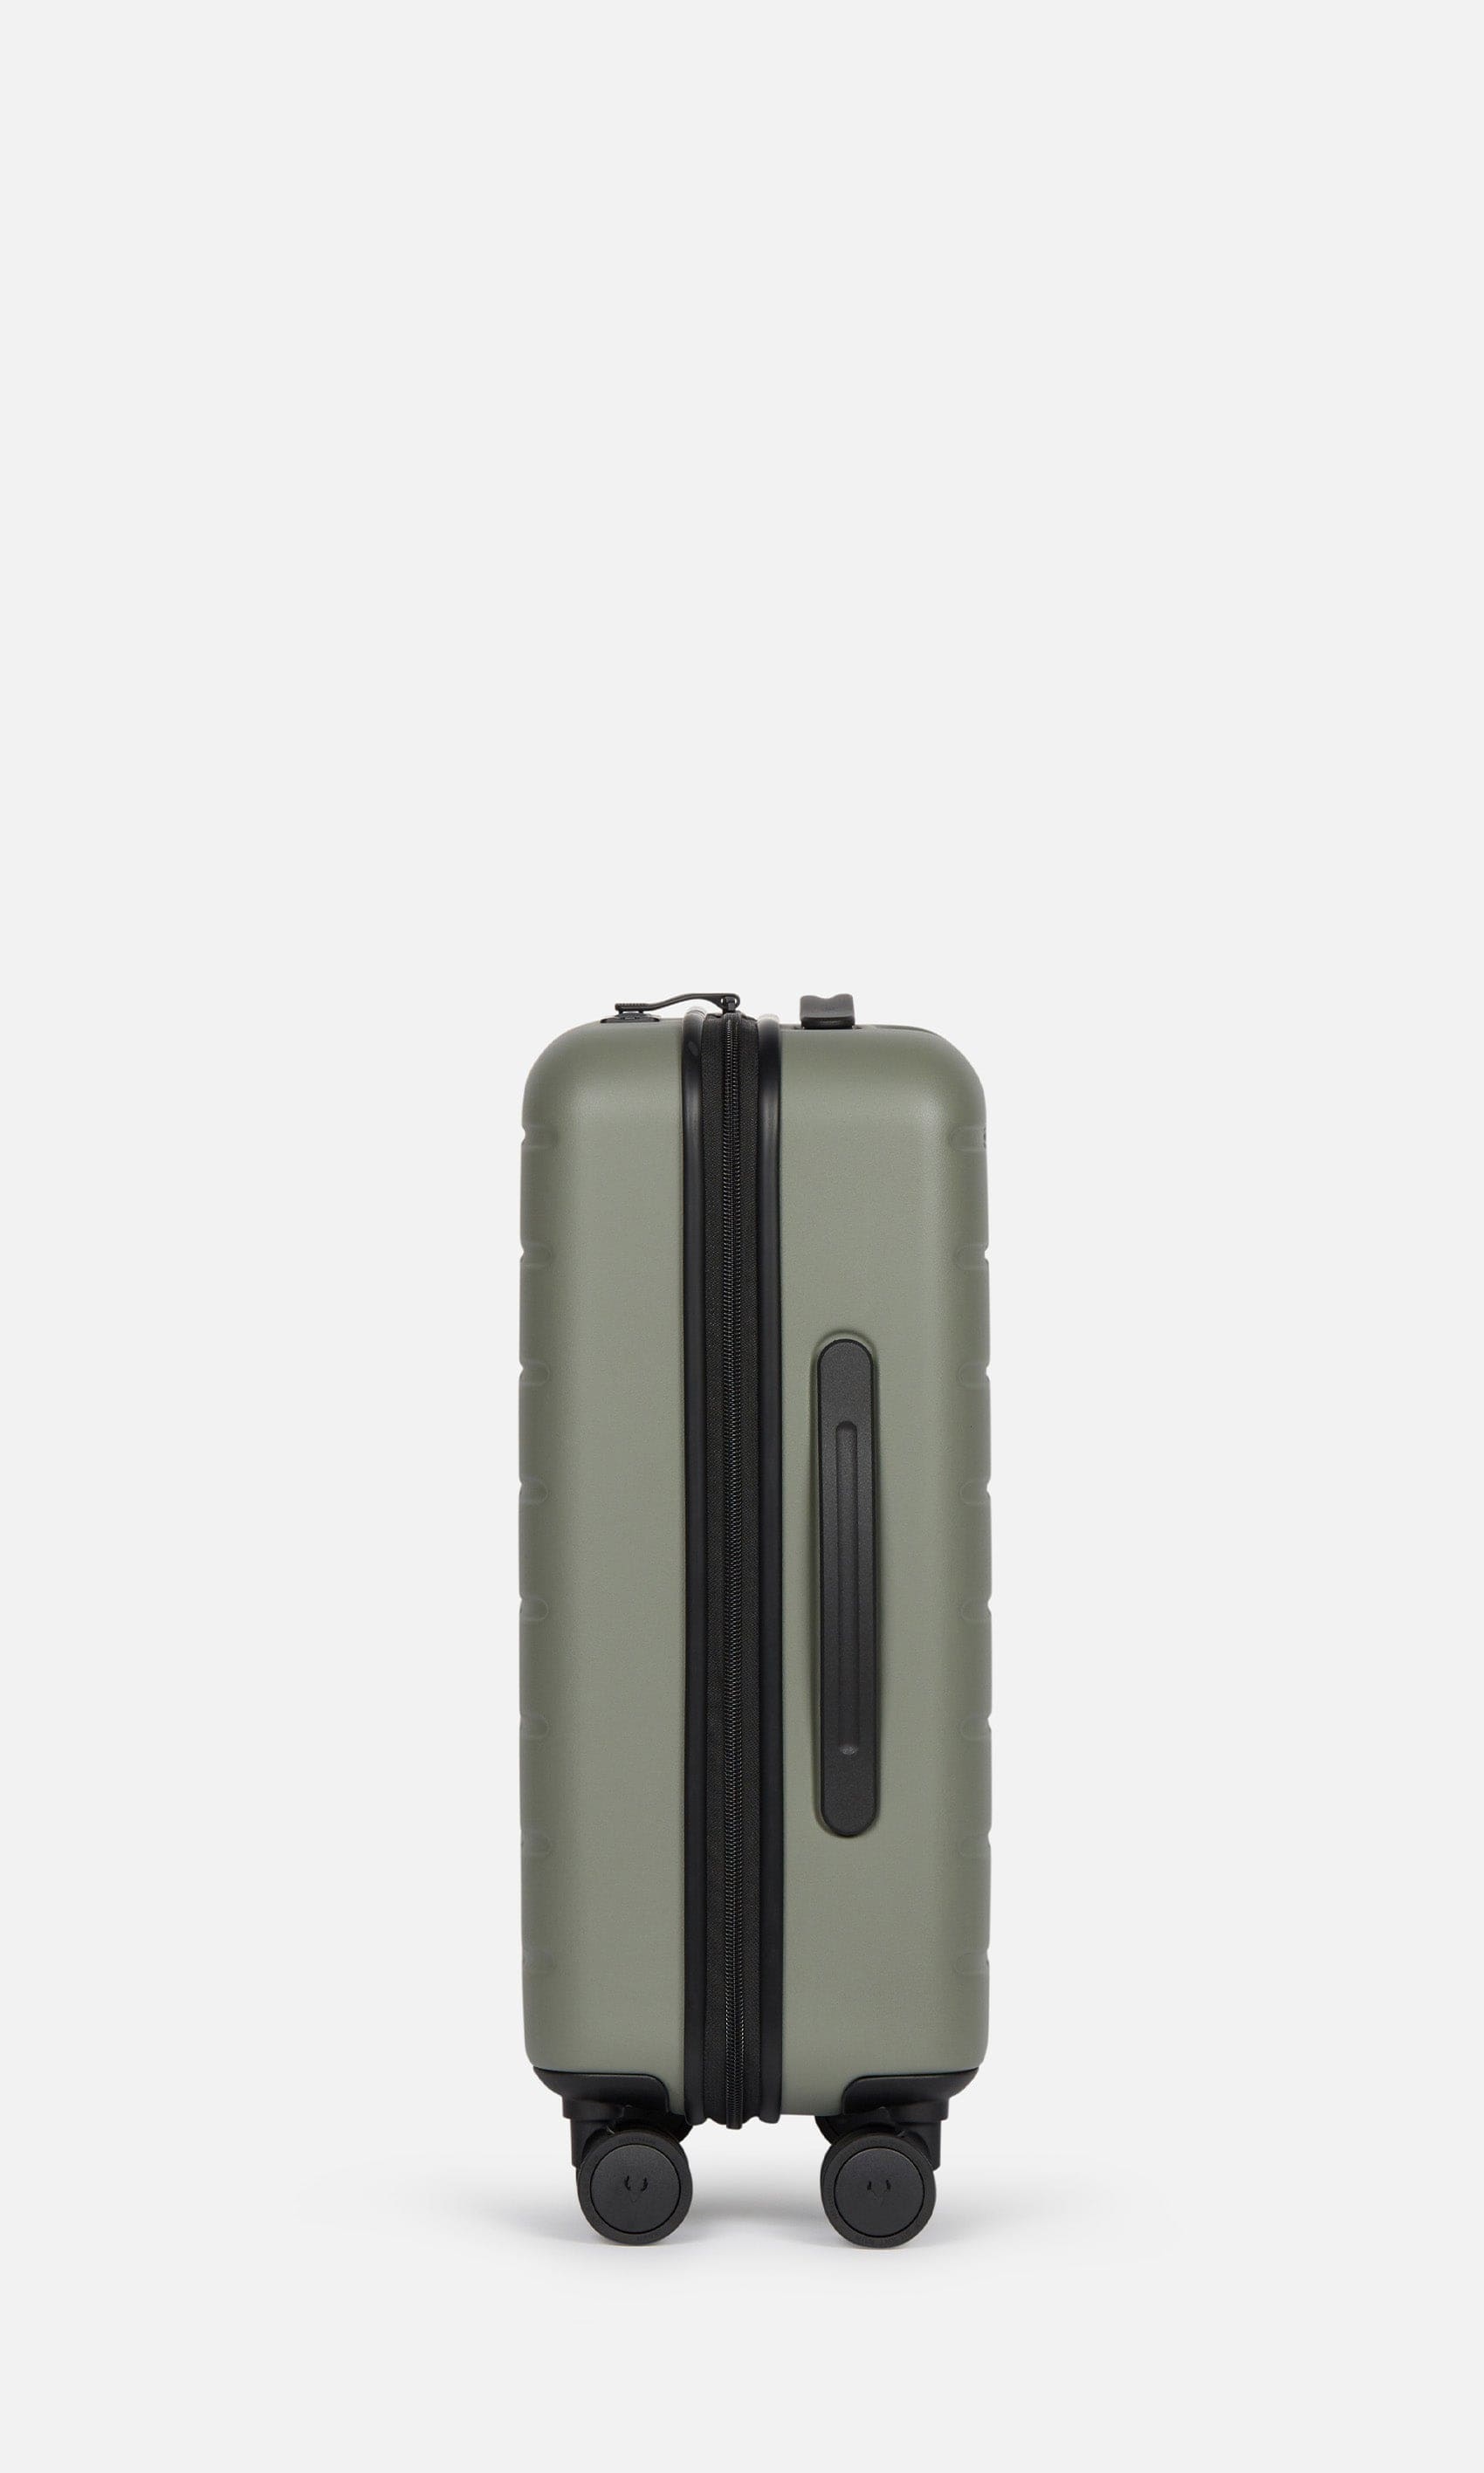 Antler Luggage -  Stamford cabin in khaki - Hard Suitcases Stamford Cabin Suitcase Khaki (Green) | Hard Luggage | Antler UK